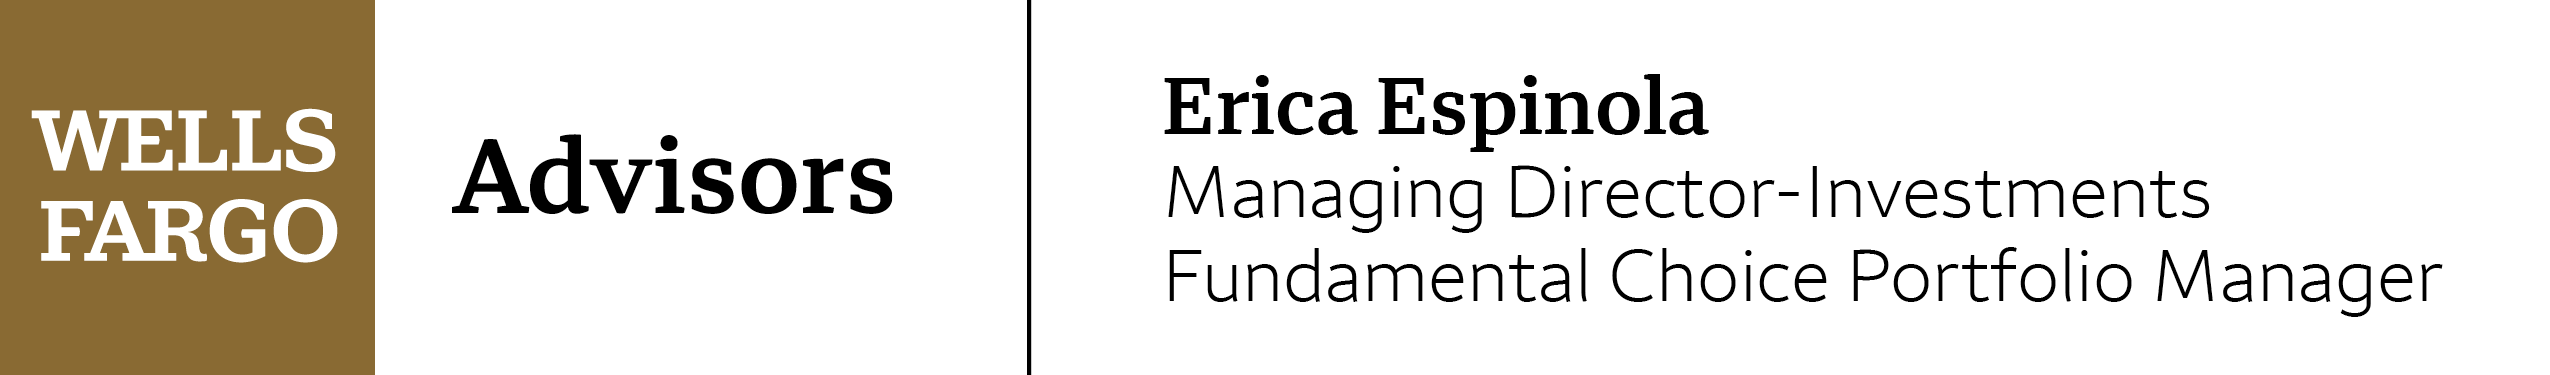 Erica Espinola Wells Fargo Advisors